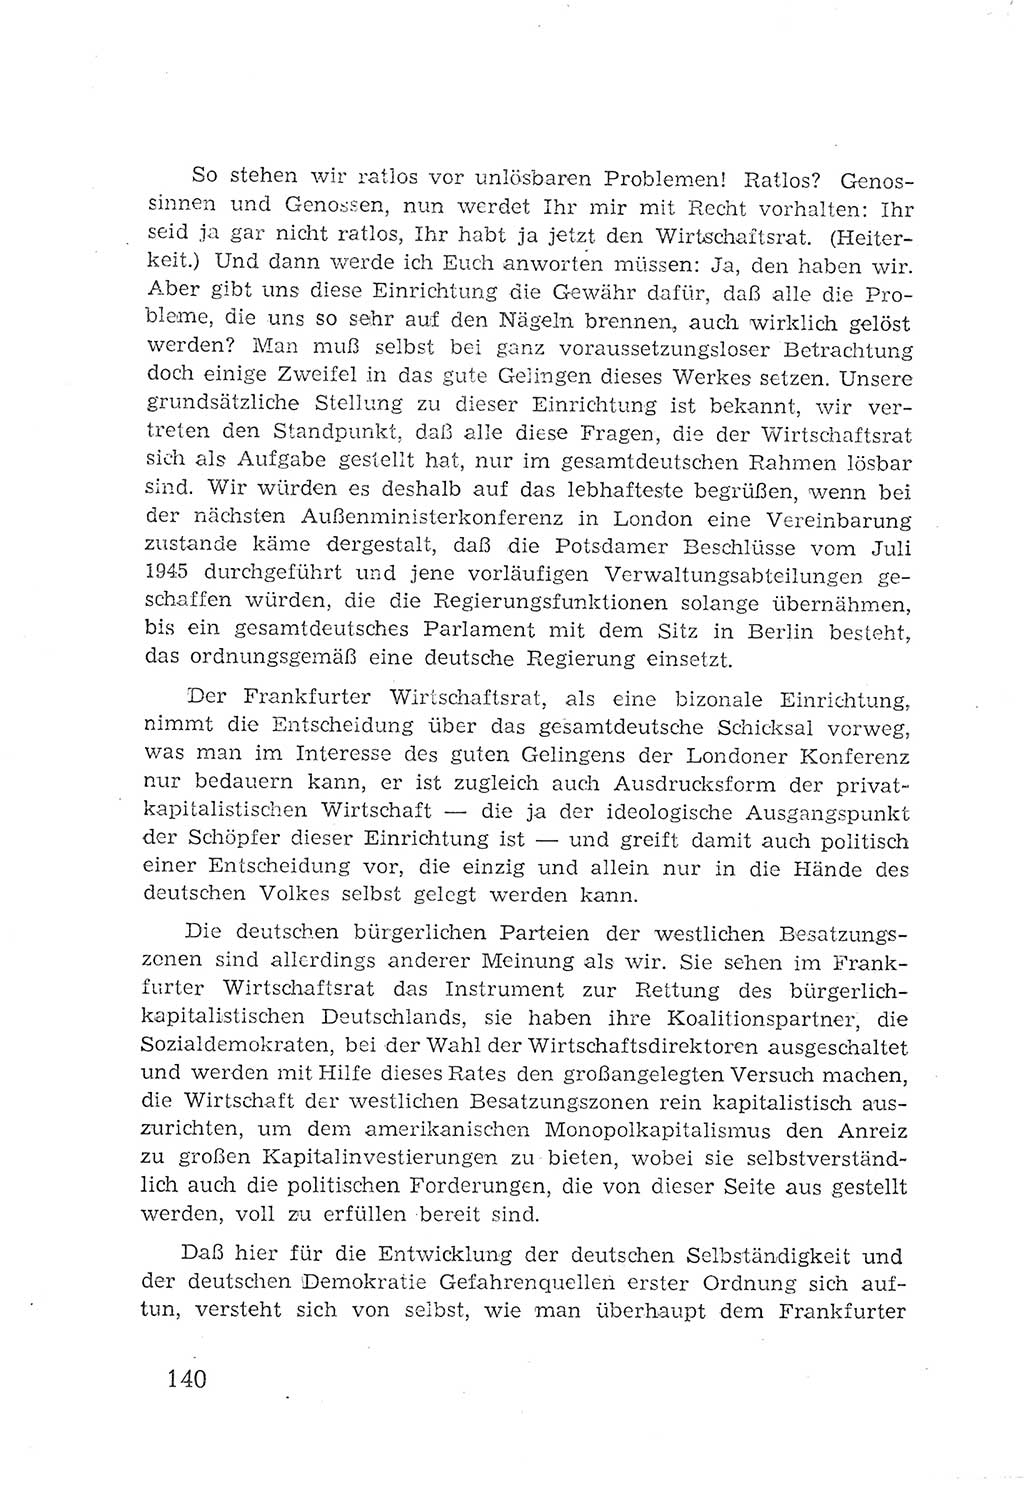 Protokoll der Verhandlungen des 2. Parteitages der Sozialistischen Einheitspartei Deutschlands (SED) [Sowjetische Besatzungszone (SBZ) Deutschlands] 1947, Seite 140 (Prot. Verh. 2. PT SED SBZ Dtl. 1947, S. 140)